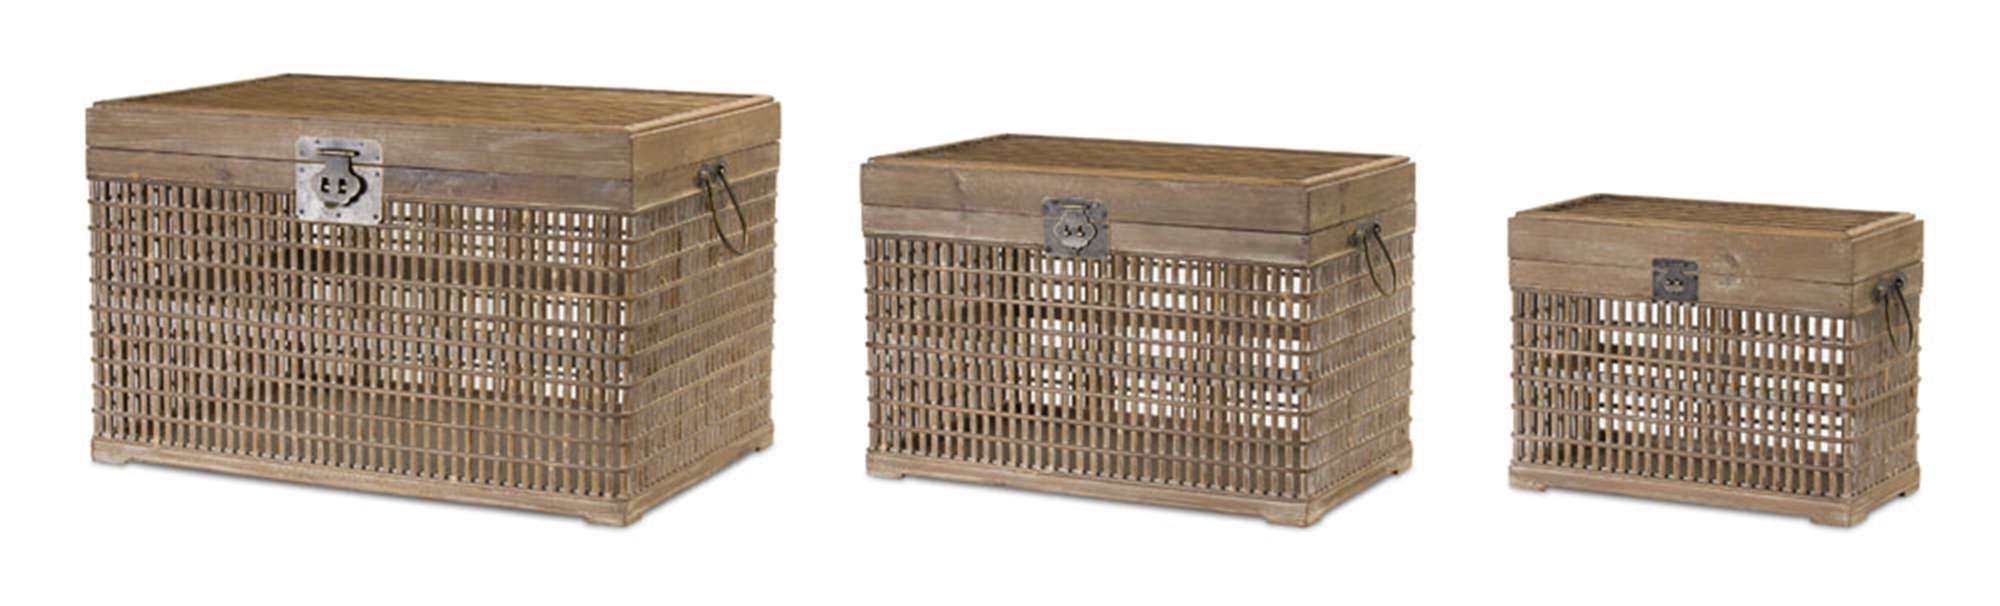 Crate (Set of 3) 15.5"L x 11"H, 20"L x 13"H, 24.5"L x 15"H Bamboo/Wood